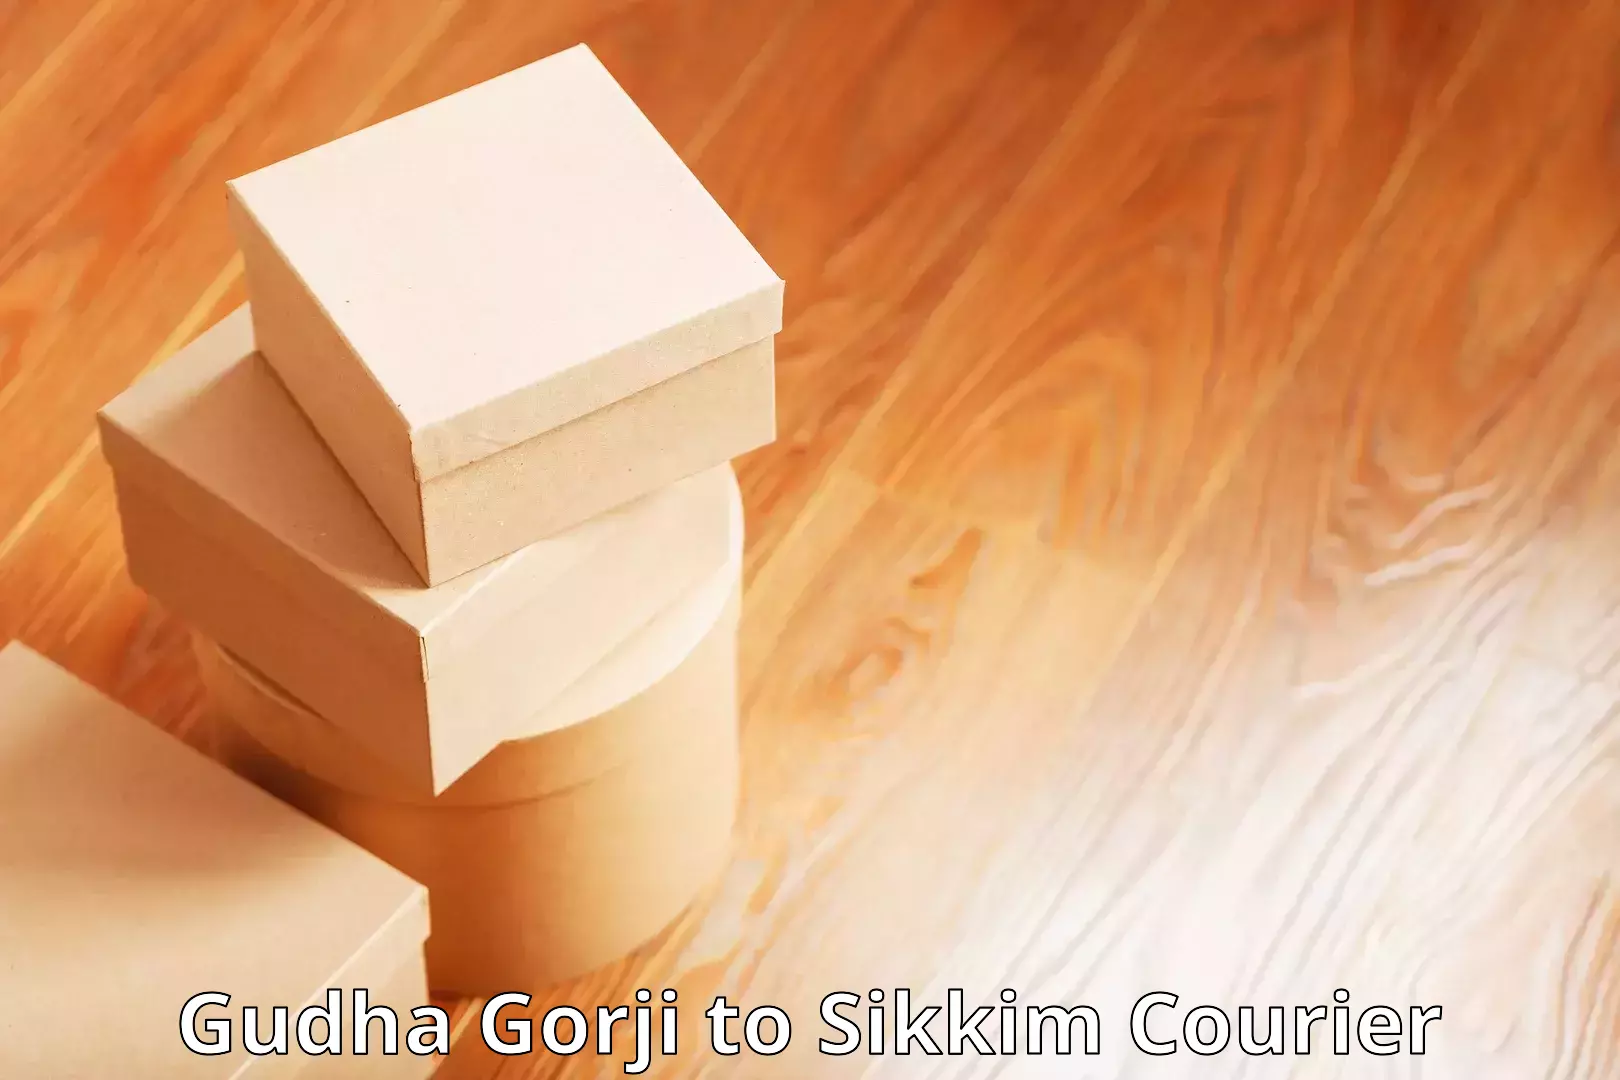 Shipping and handling Gudha Gorji to Geyzing